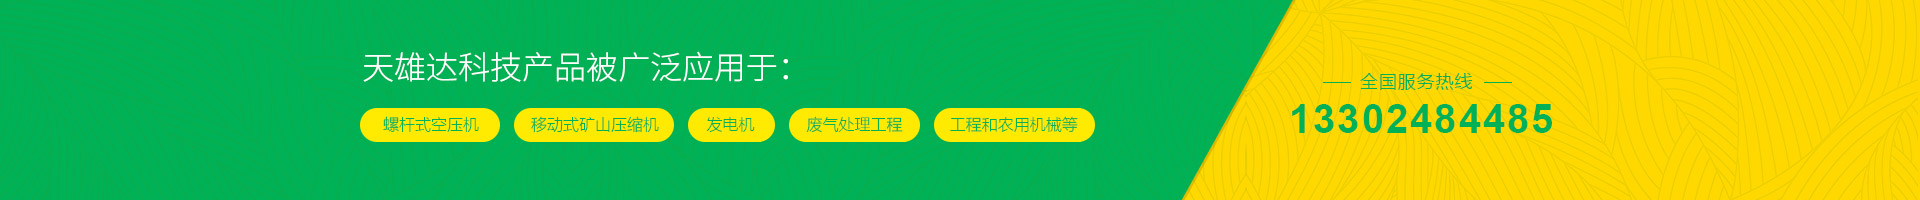 全国服务热线深圳9游会中心科技有限公司